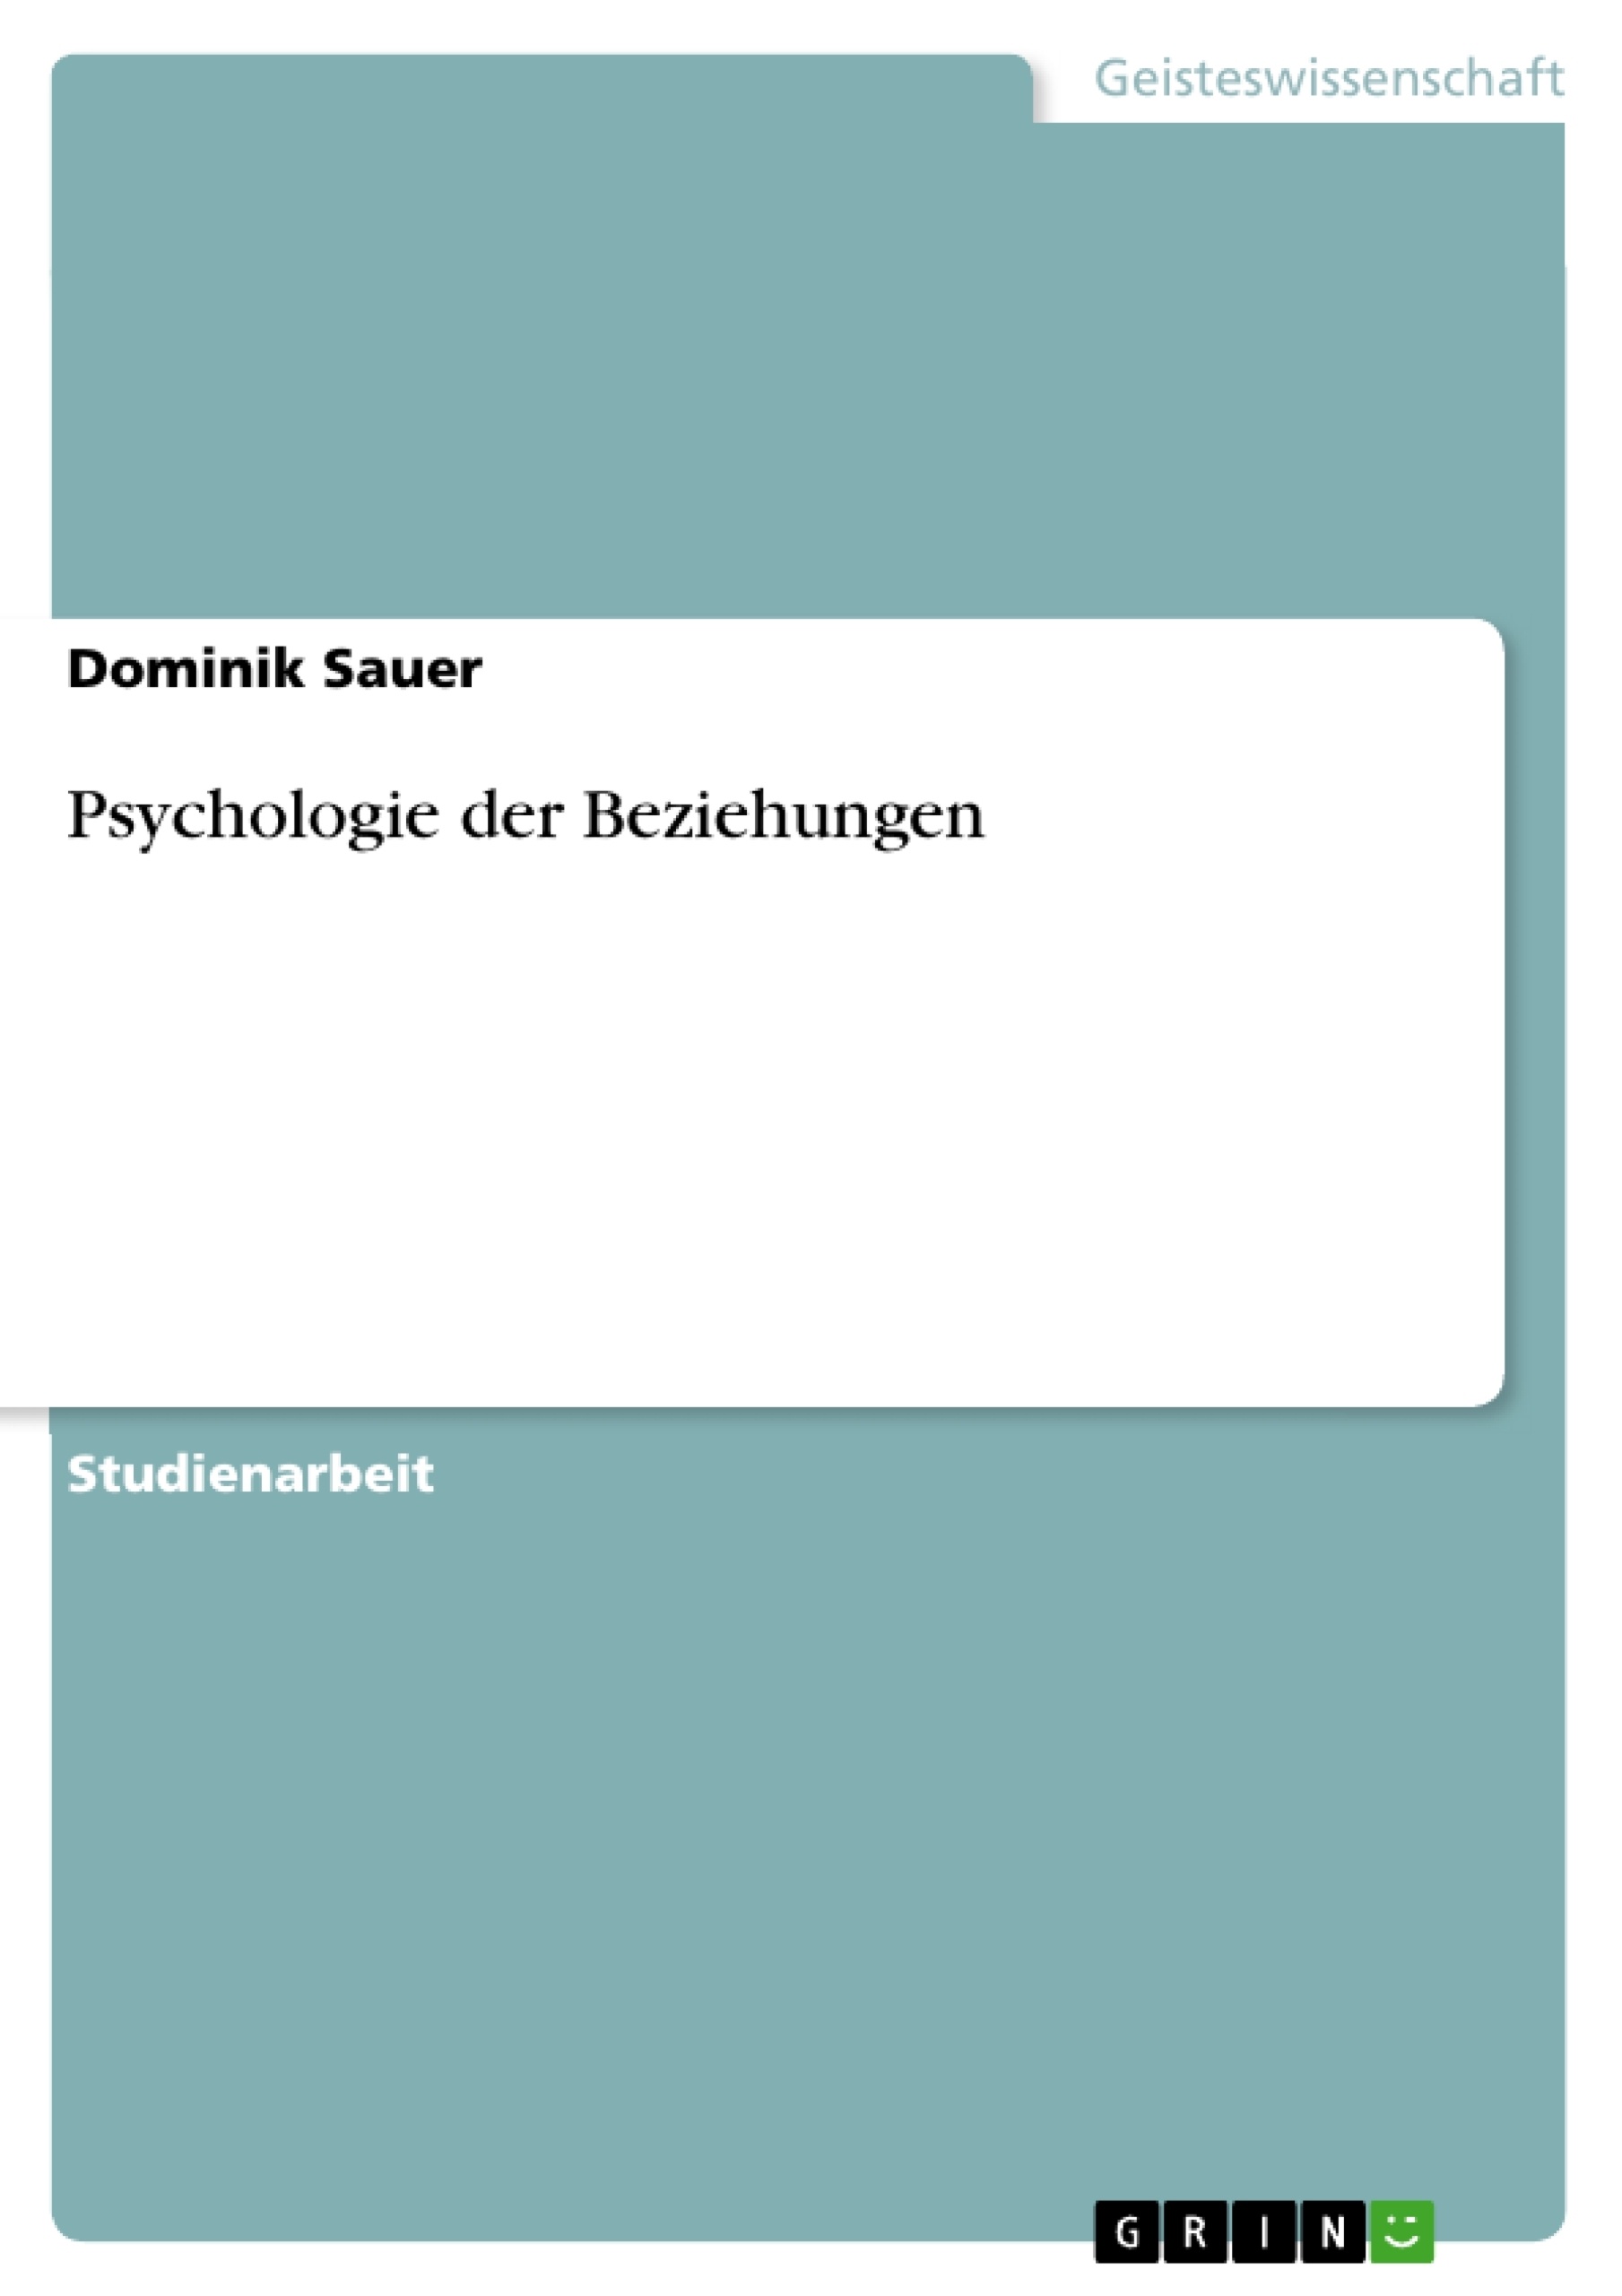 Title: Psychologie der Beziehungen